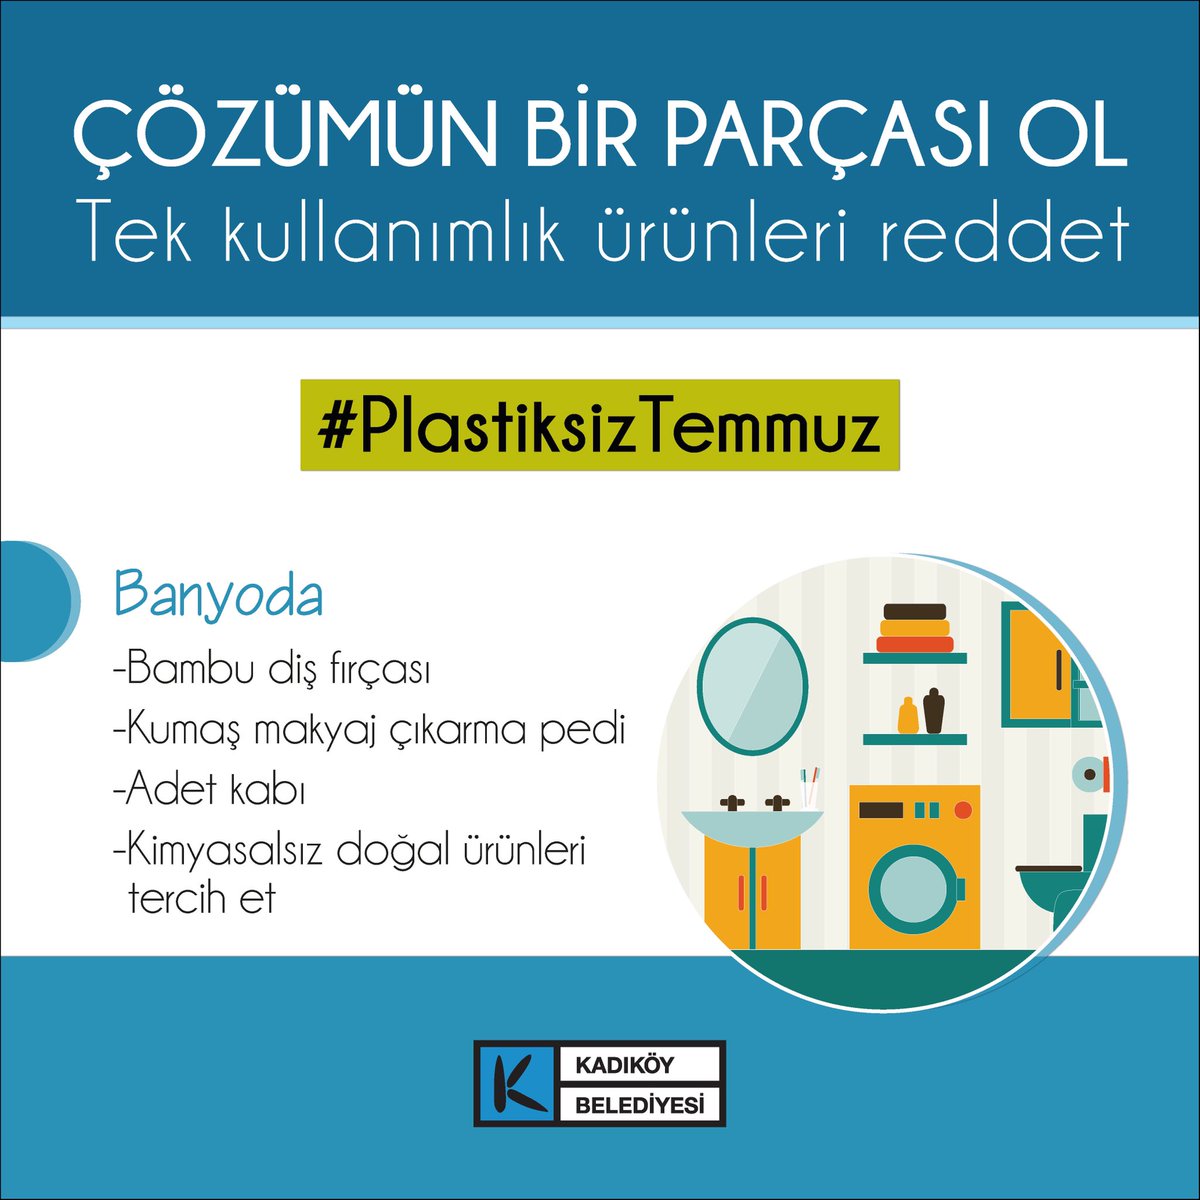 ♻️Tüm dünyada plastik kullanımını azaltma gerekliliğine dikkat çeken #PlastiksizTemmuz hareketine sen de katıl; hayata geçirebileceğin basit uygulamalarla tek kullanımlık plastiği hayatından çıkar 🌍 #PlasticFreeJuly